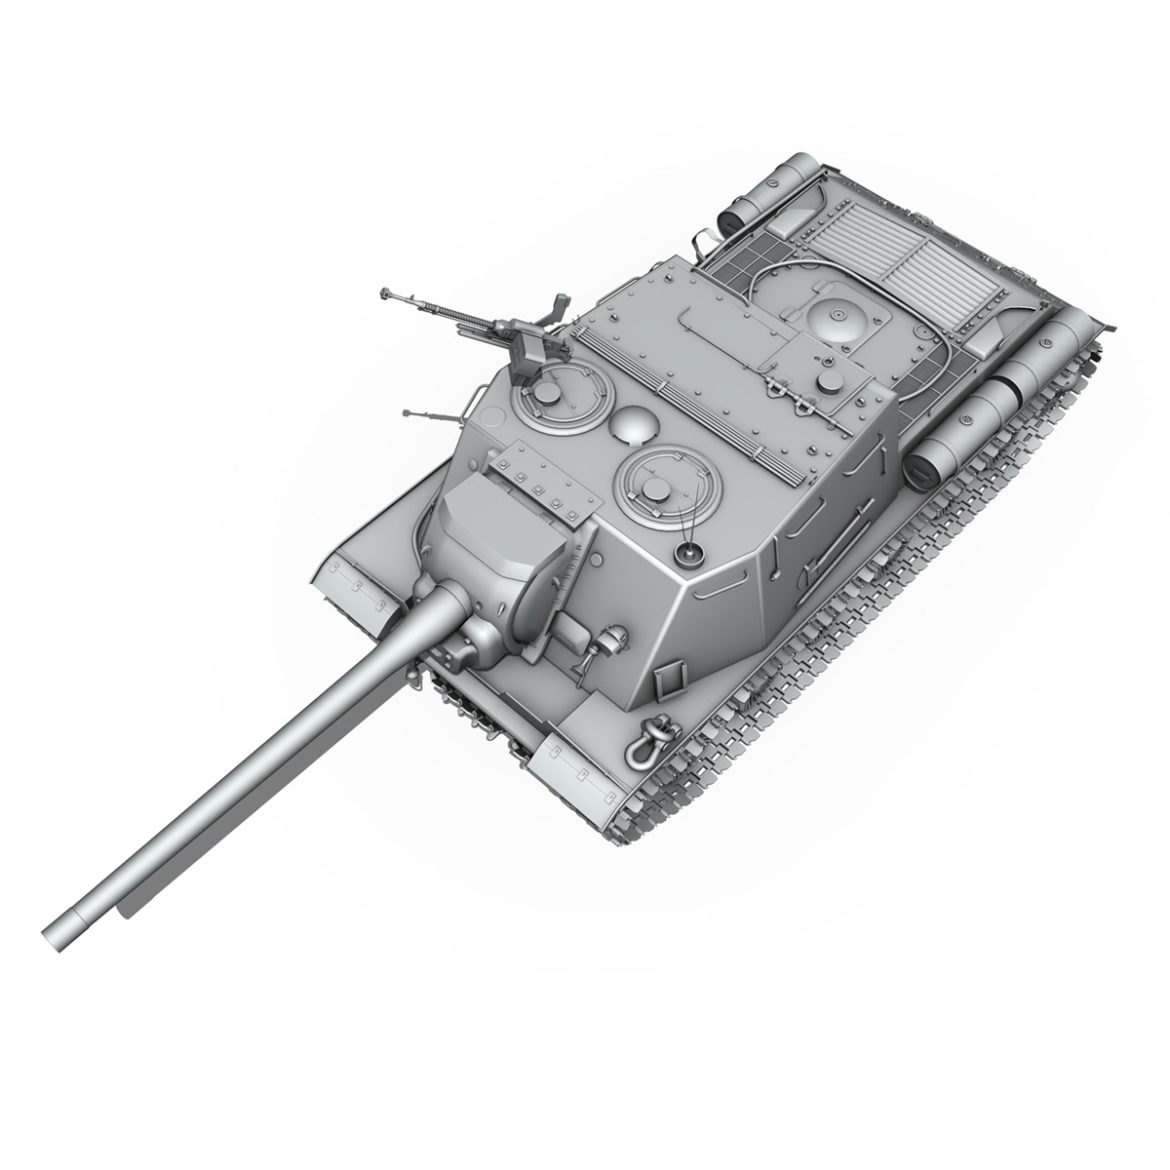  <a class="continue" href="https://www.flatpyramid.com/3d-models/vehicles-3d-models/military-vehicles/artillery/isu-122-soviet-heavy-self-propelled-gun/">Continue Reading<span> ISU 122 – Soviet heavy self propelled gun</span></a>